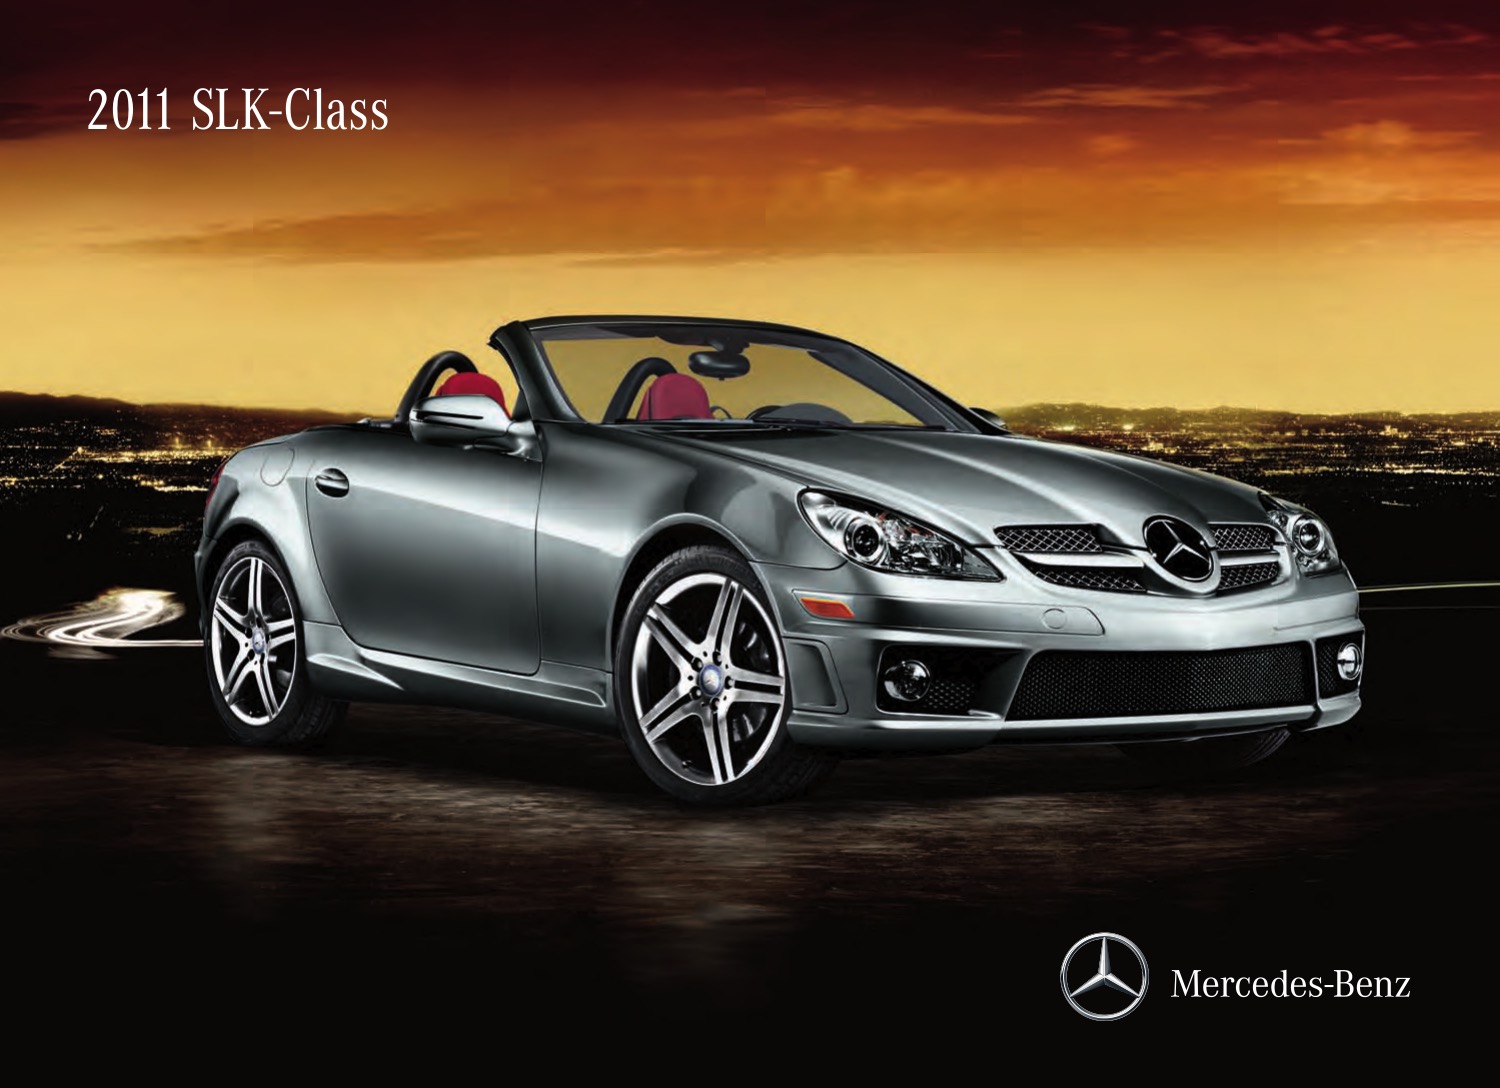 2011 Mercedes-Benz SLK-Class Brochure